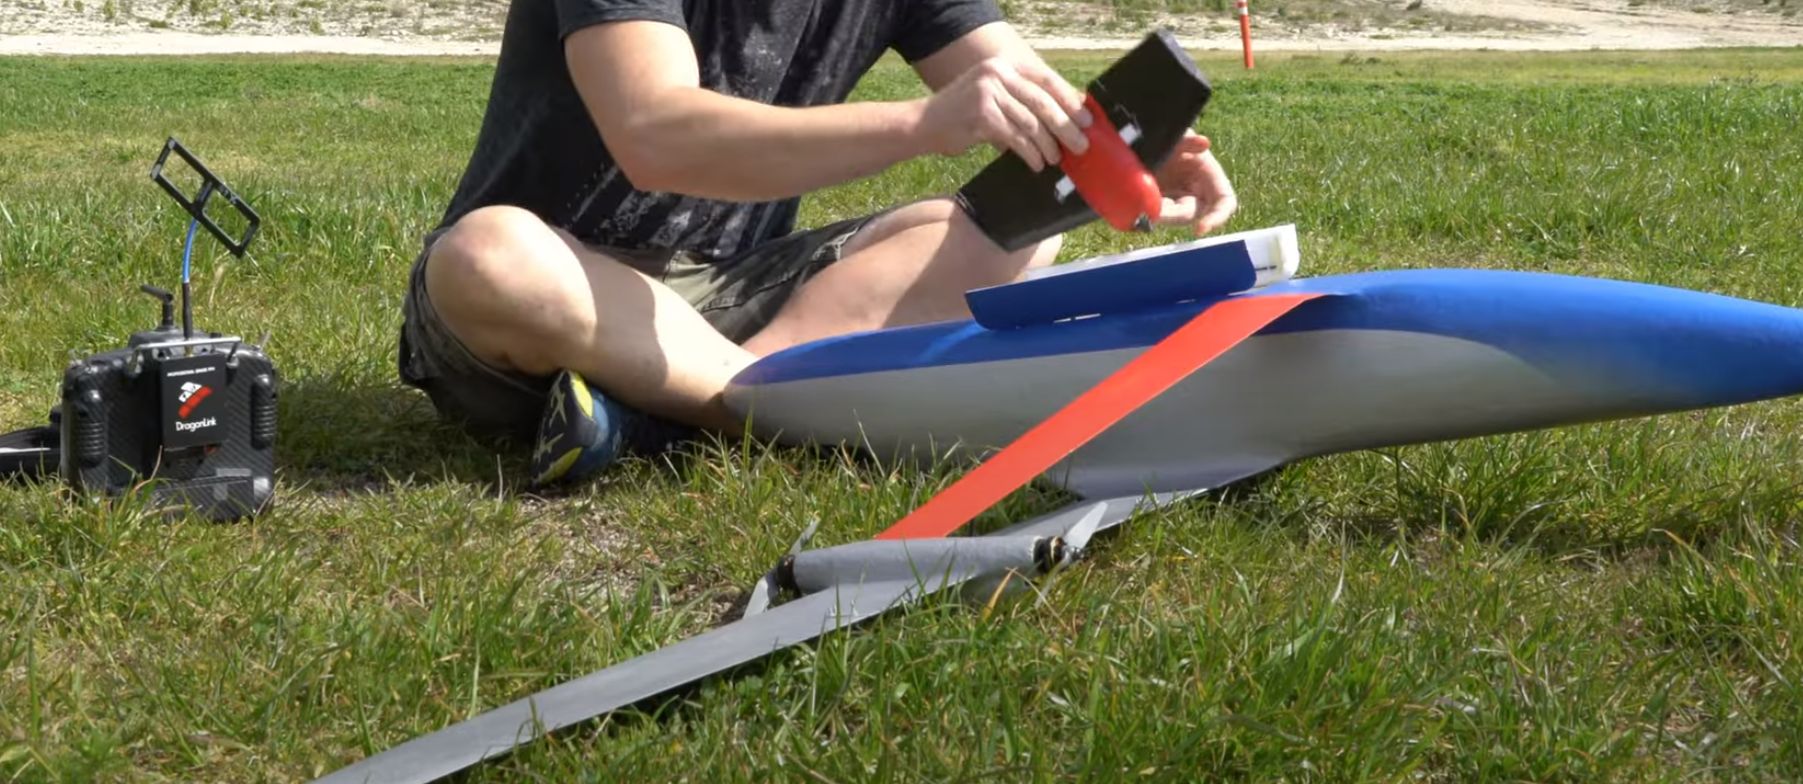 Construir um aeromodelo com treliças: faz sentido ou não faz sentido?